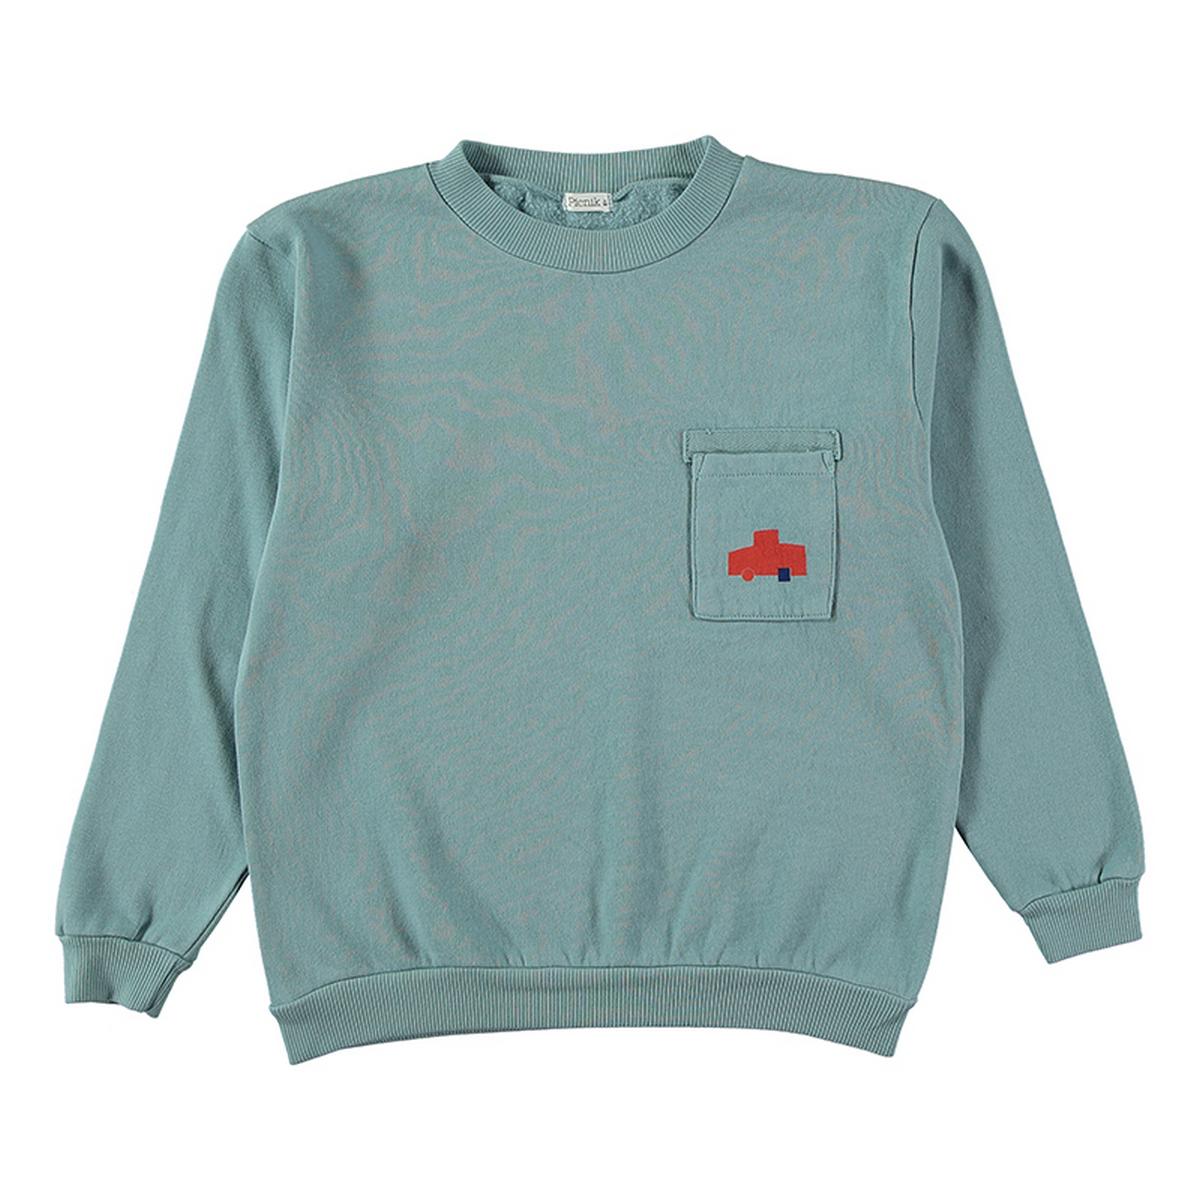 Picnik Blue Apolo Sweater